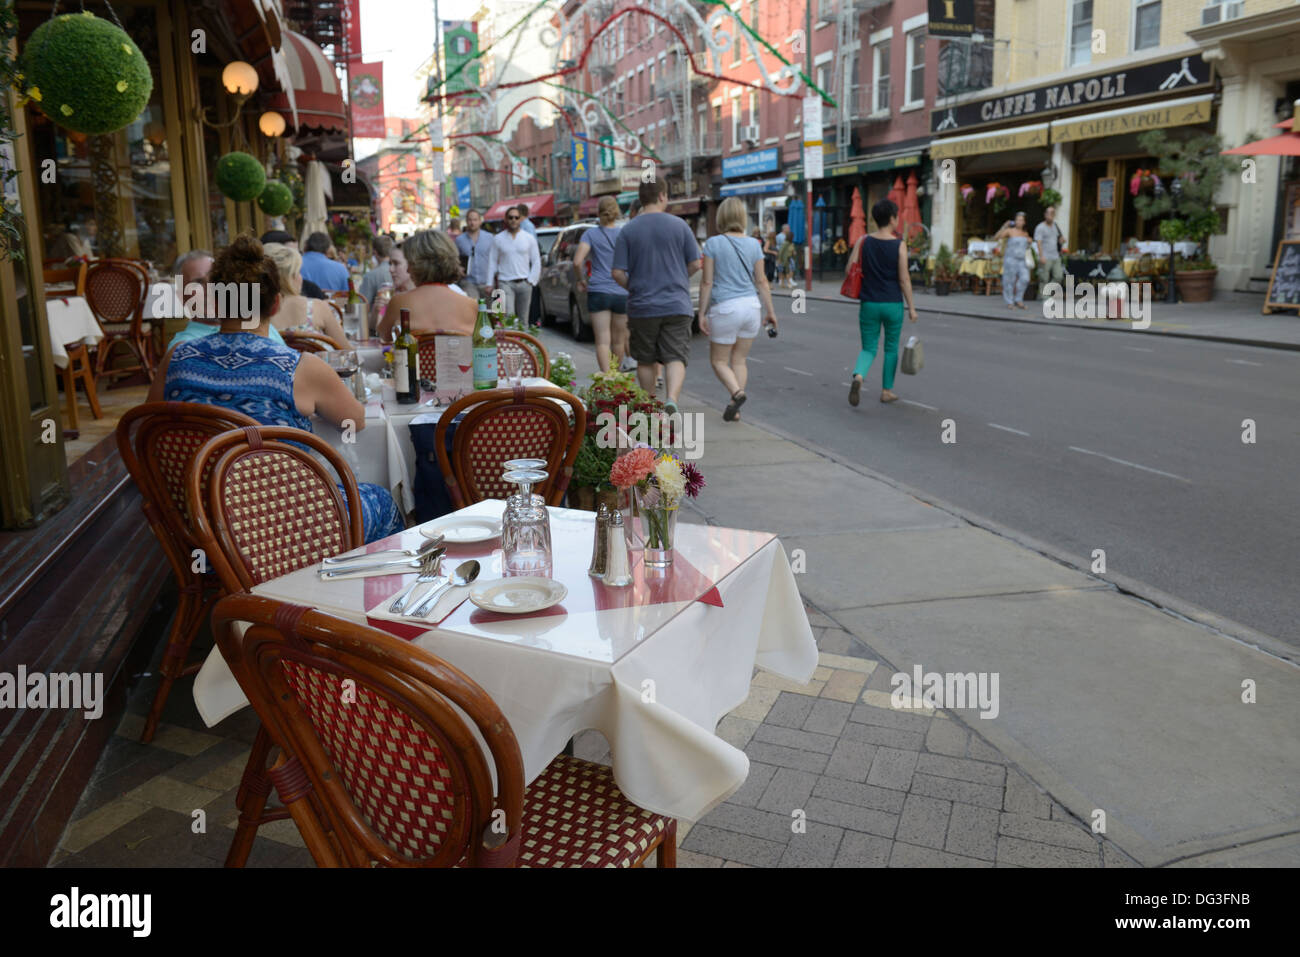 Restaurant im Freien Tische, Little Italy, NYC Stockfoto